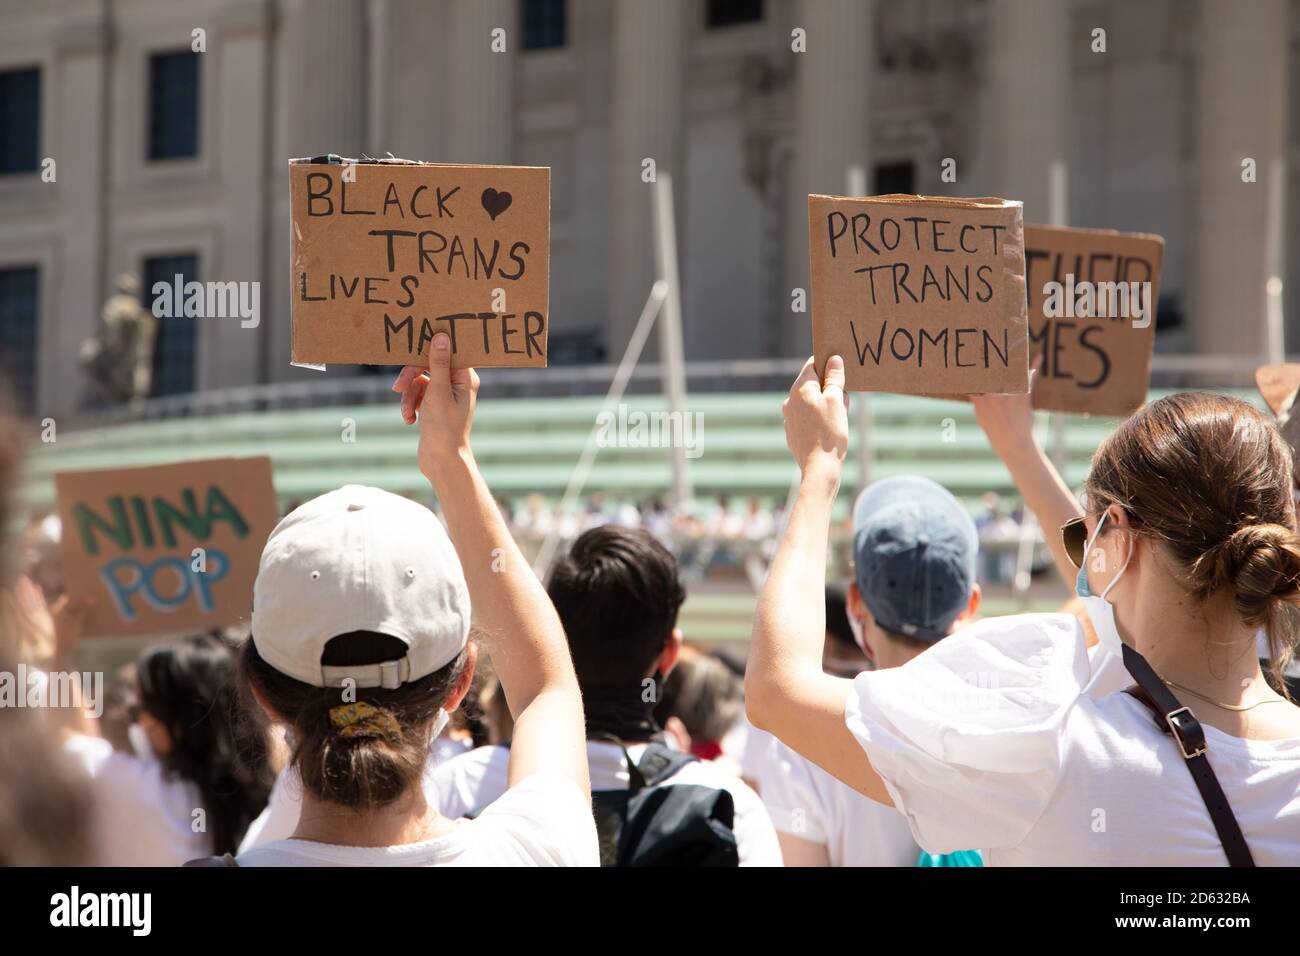 Des manifestants qui tiennent des signes Black Trans Lives Matter et Protect Trans Women sont en présence lors de manifestations devant le musée de Brooklyn, Brooklyn, New York, États-Unis Banque D'Images